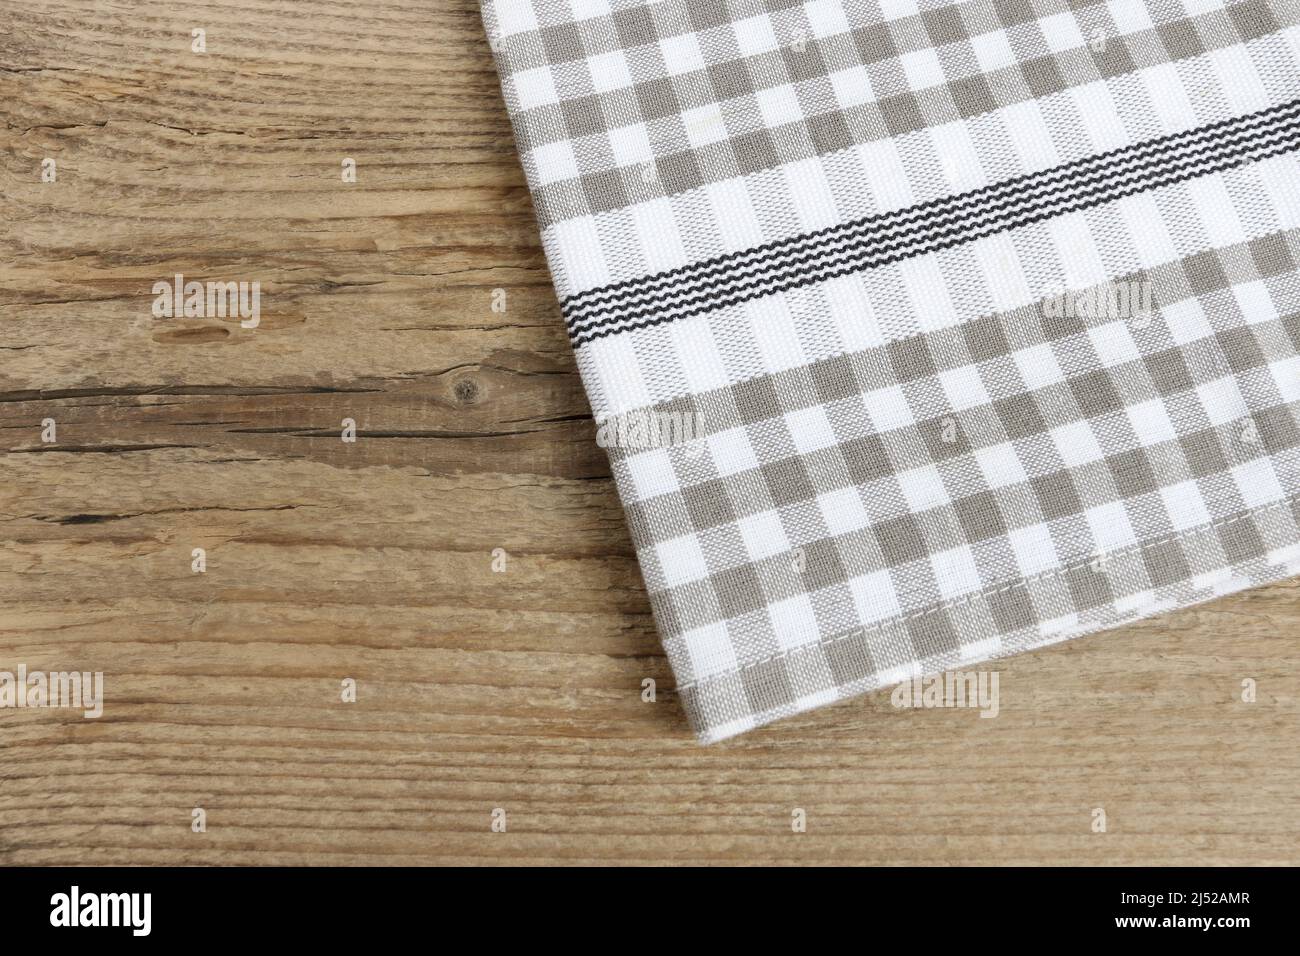 La serviette à carreaux est posée sur une table en bois. Ressources graphiques Banque D'Images